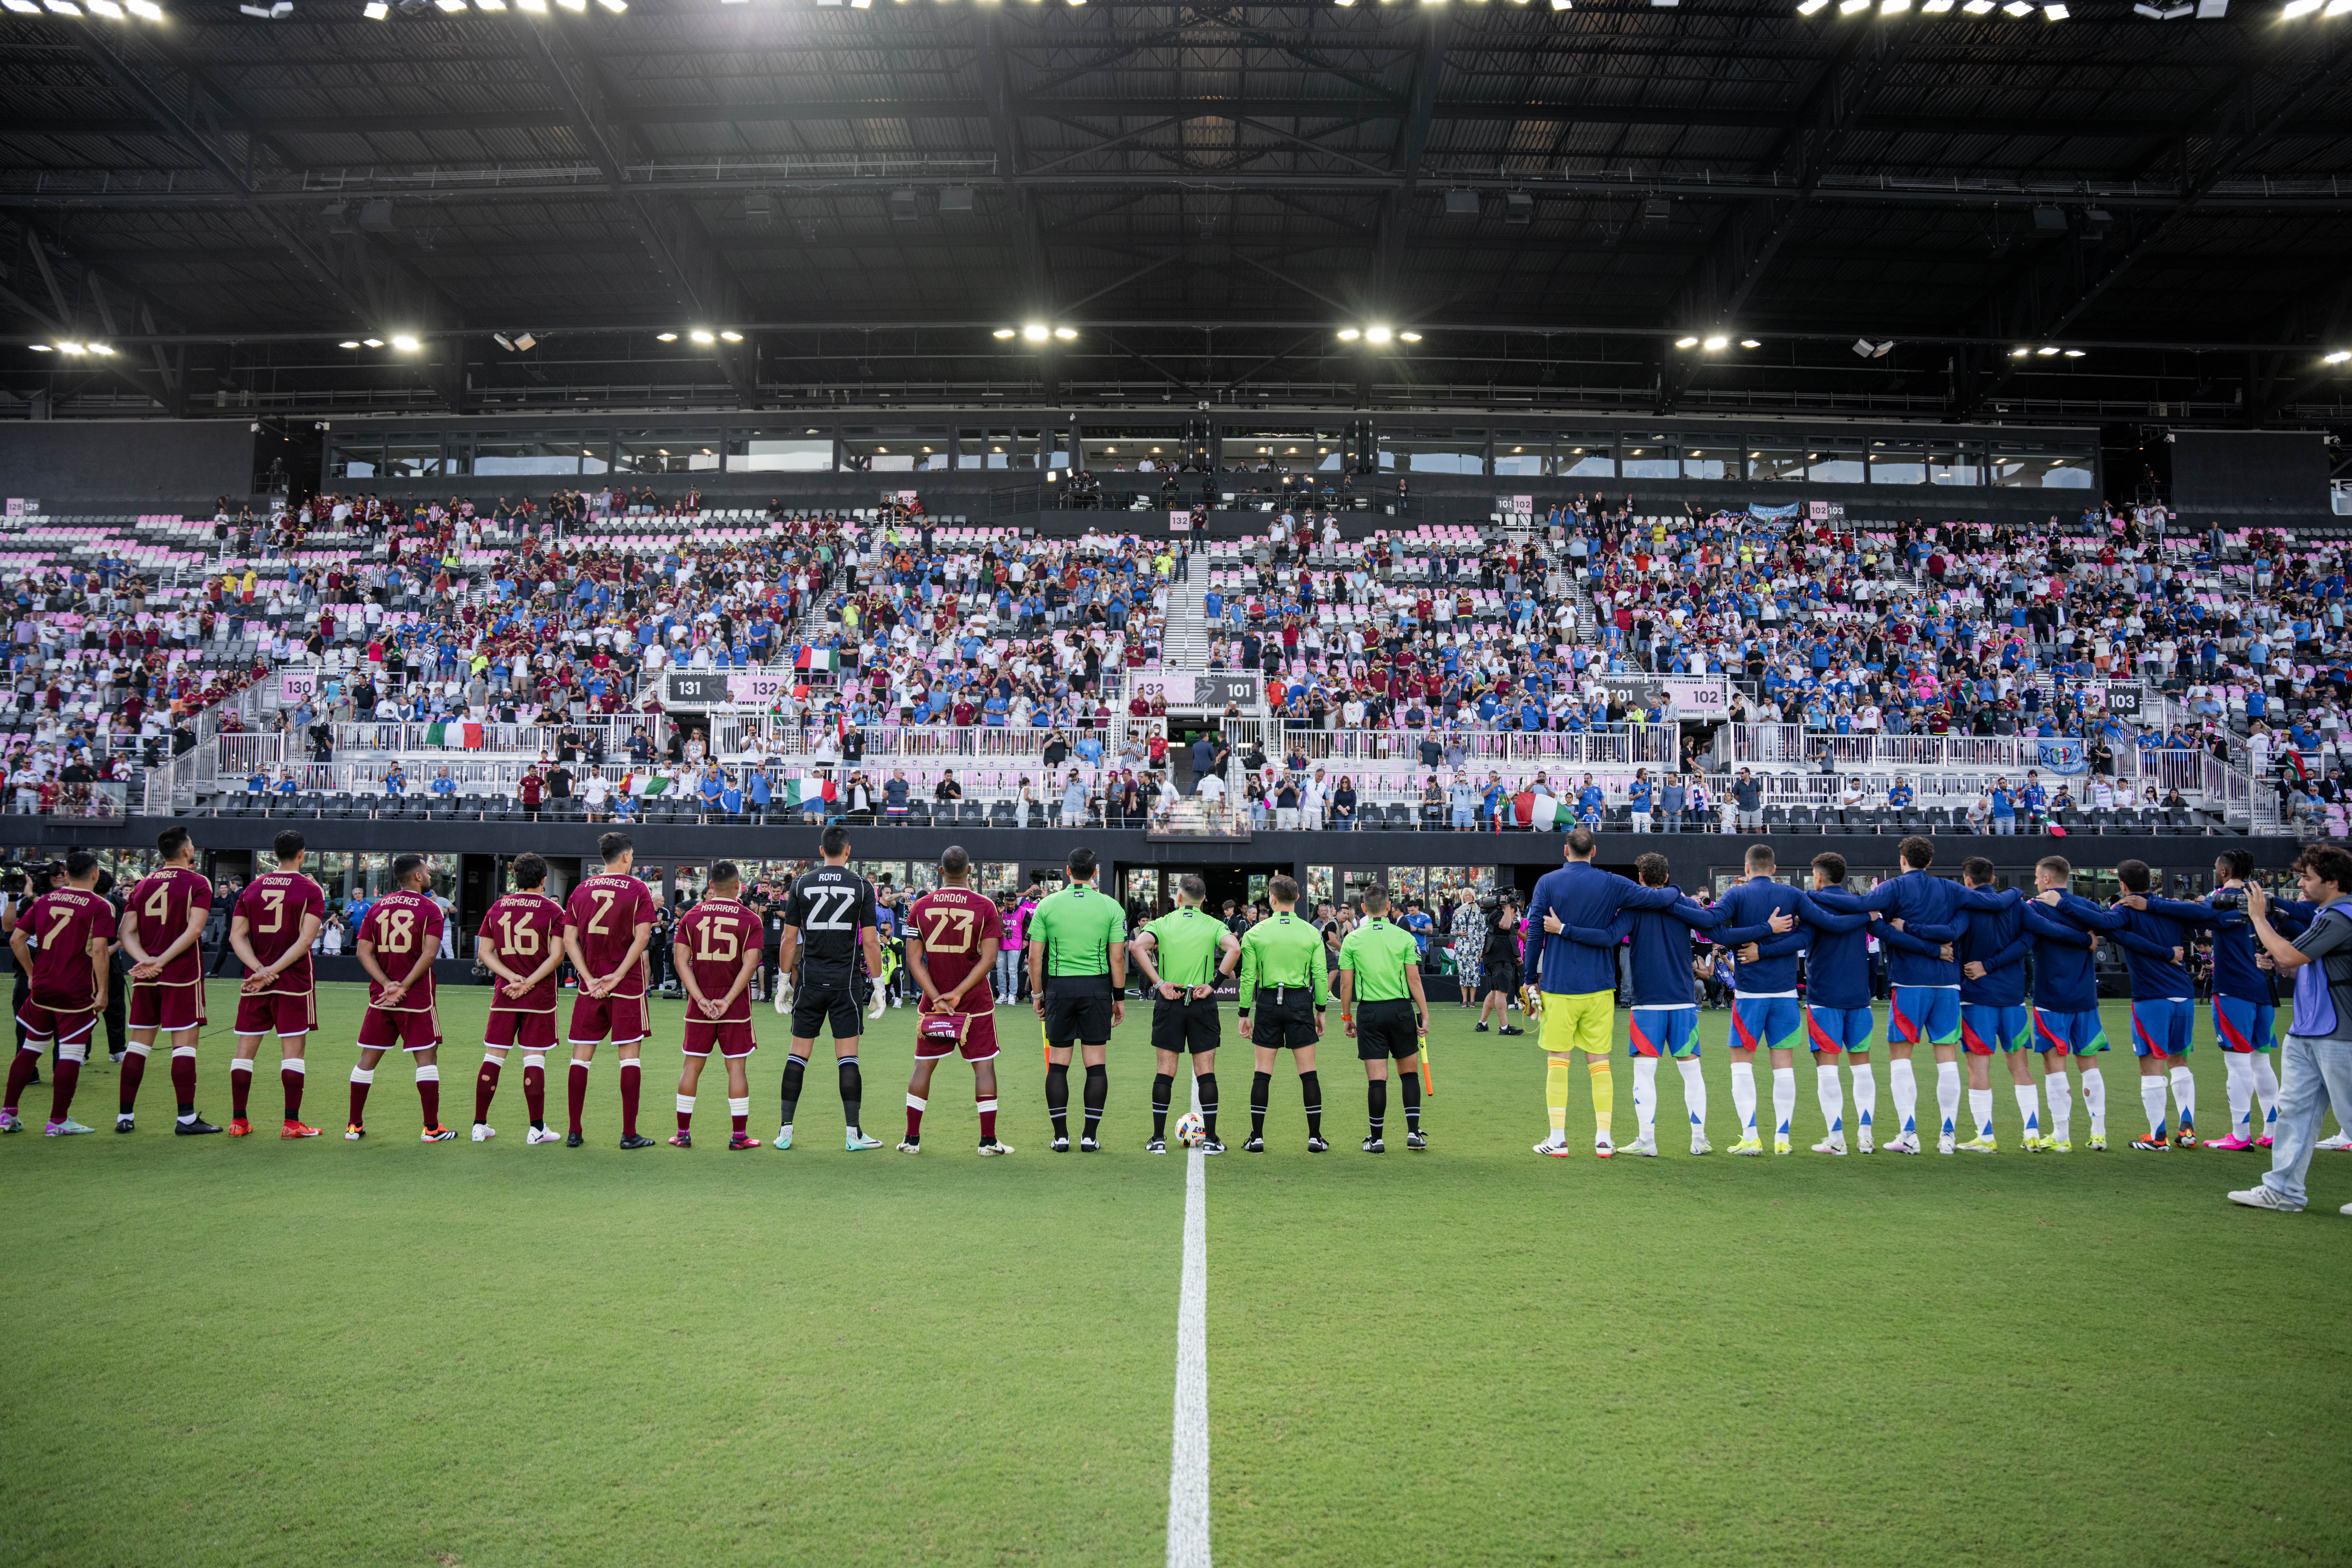 Riepilogo: Il Chase Stadium ospita un'emozionante partita amichevole internazionale in cui Italia e Venezuela si affrontano per la prima volta nella storia